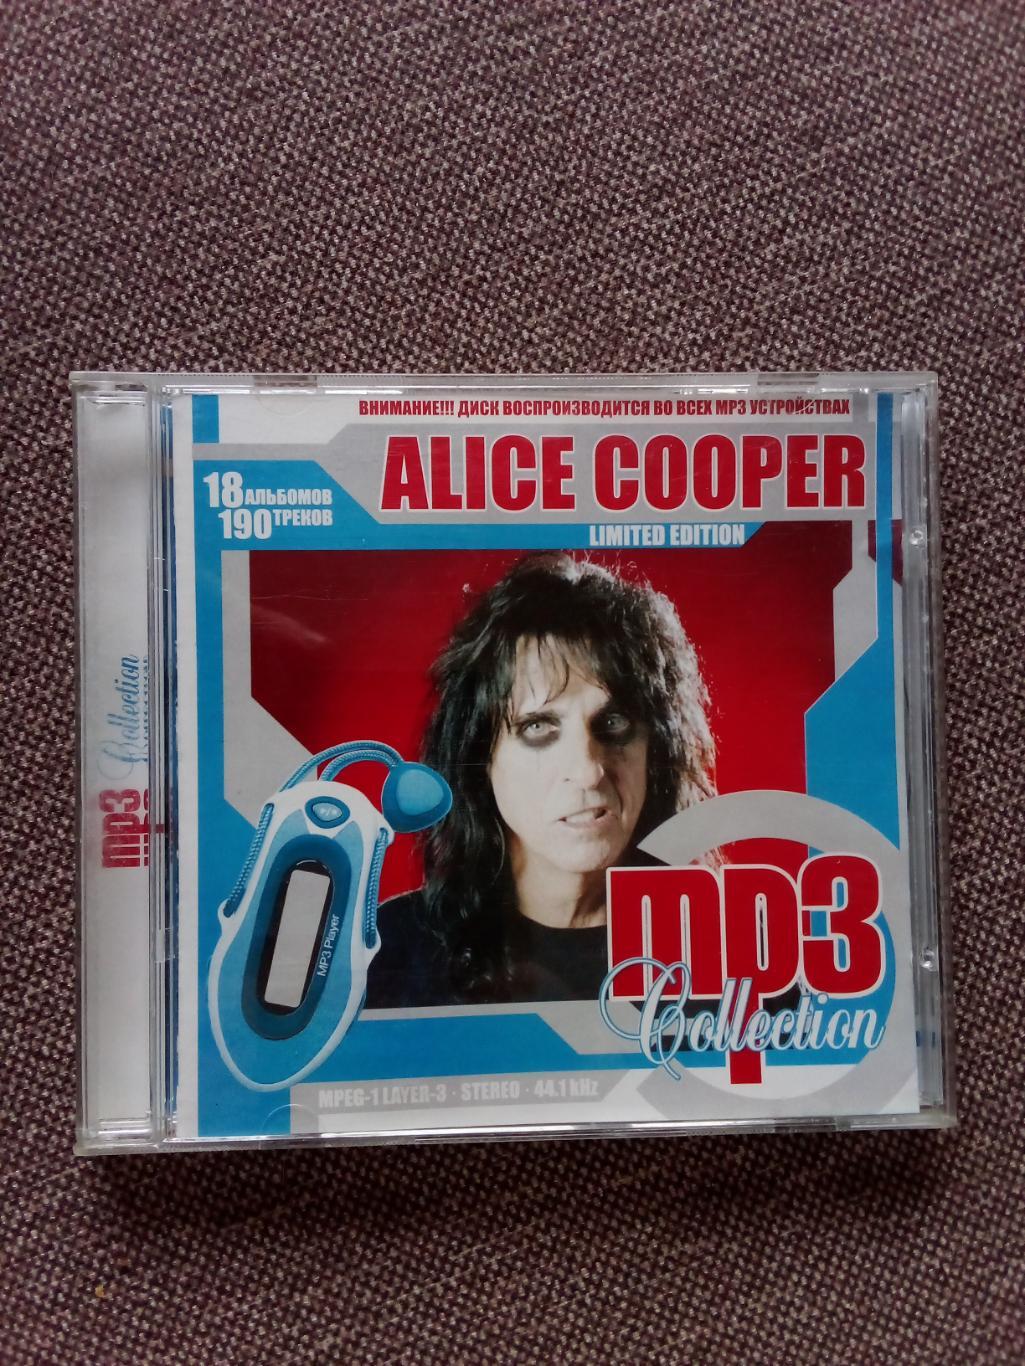 CD MP - 3 диск :Alice Cooper 1969 - 2008 гг. 18 альбомов (Рок - музыка) лицензия